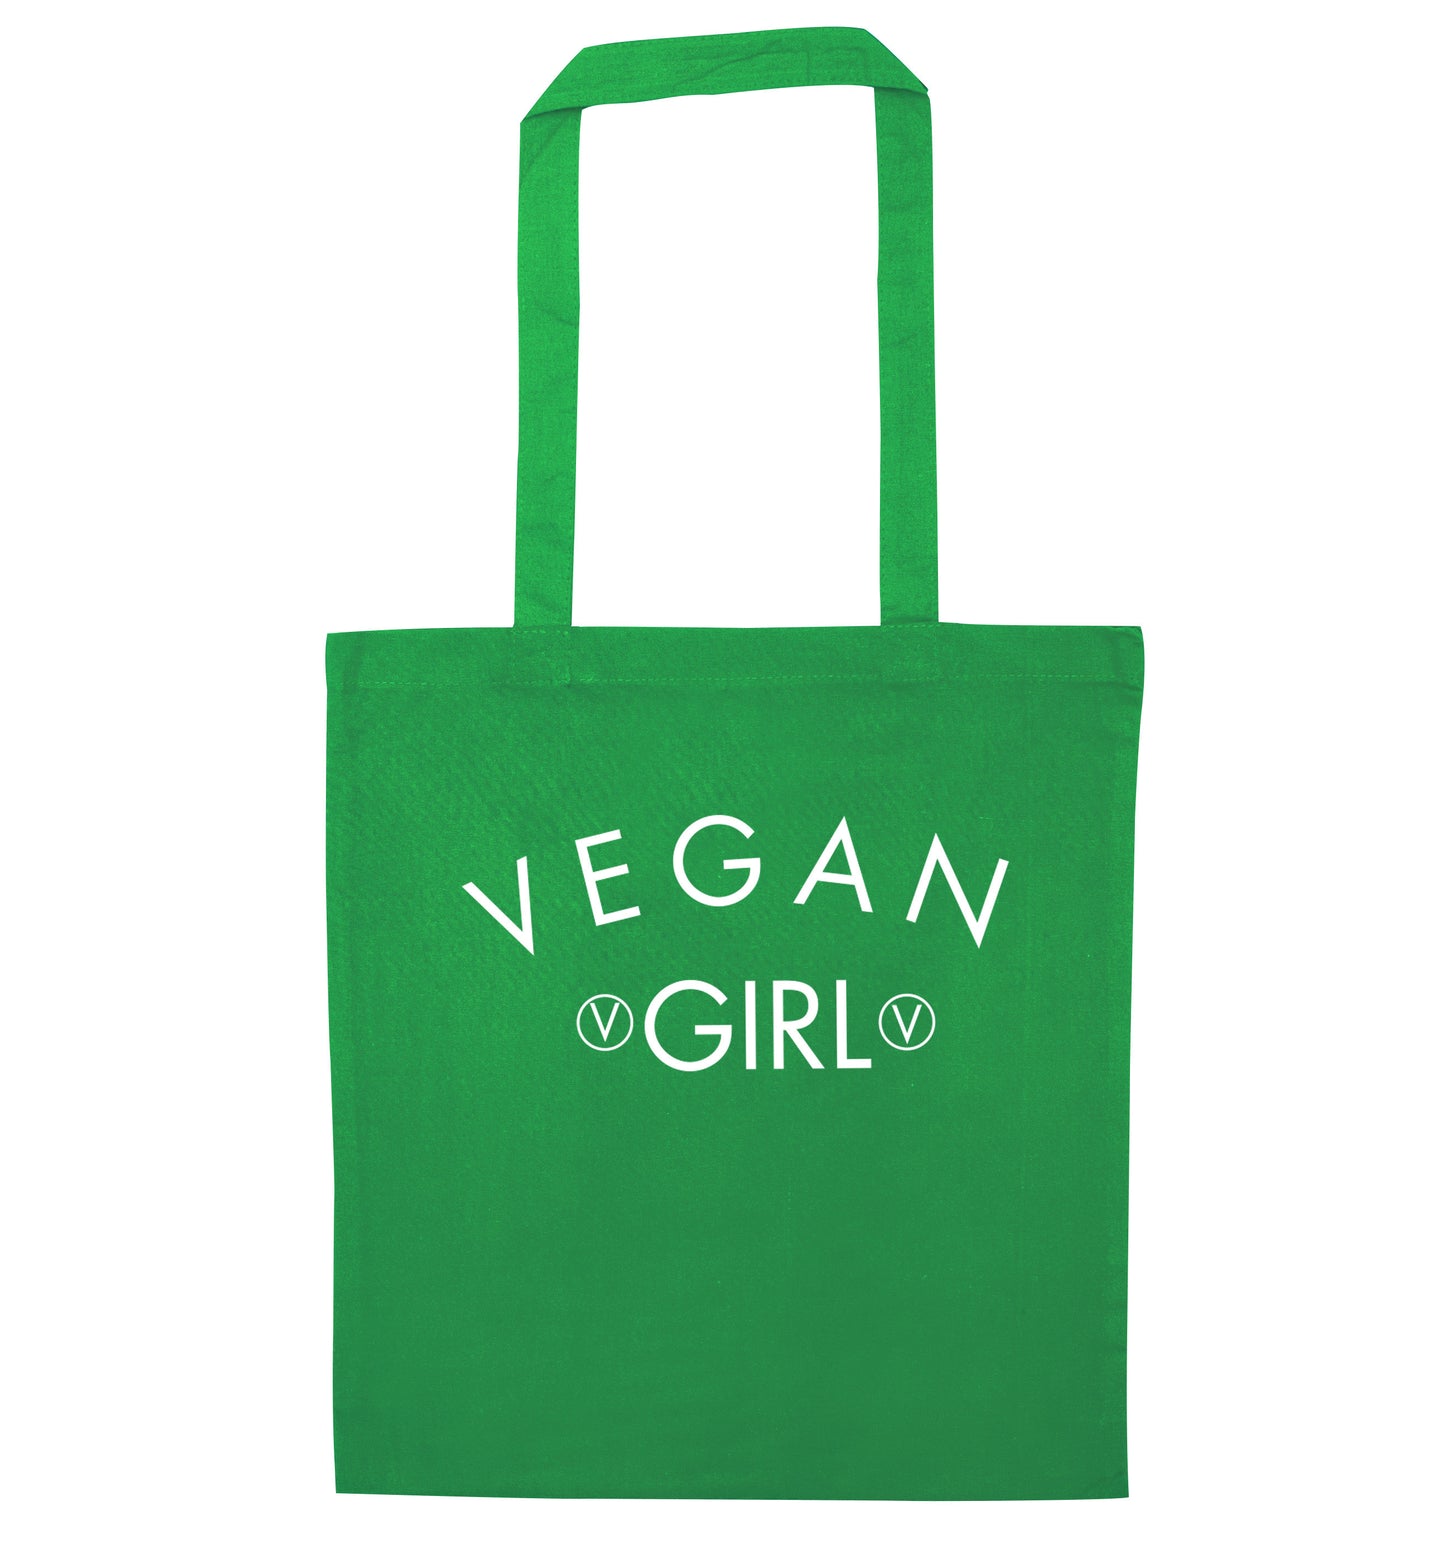 Vegan girl green tote bag